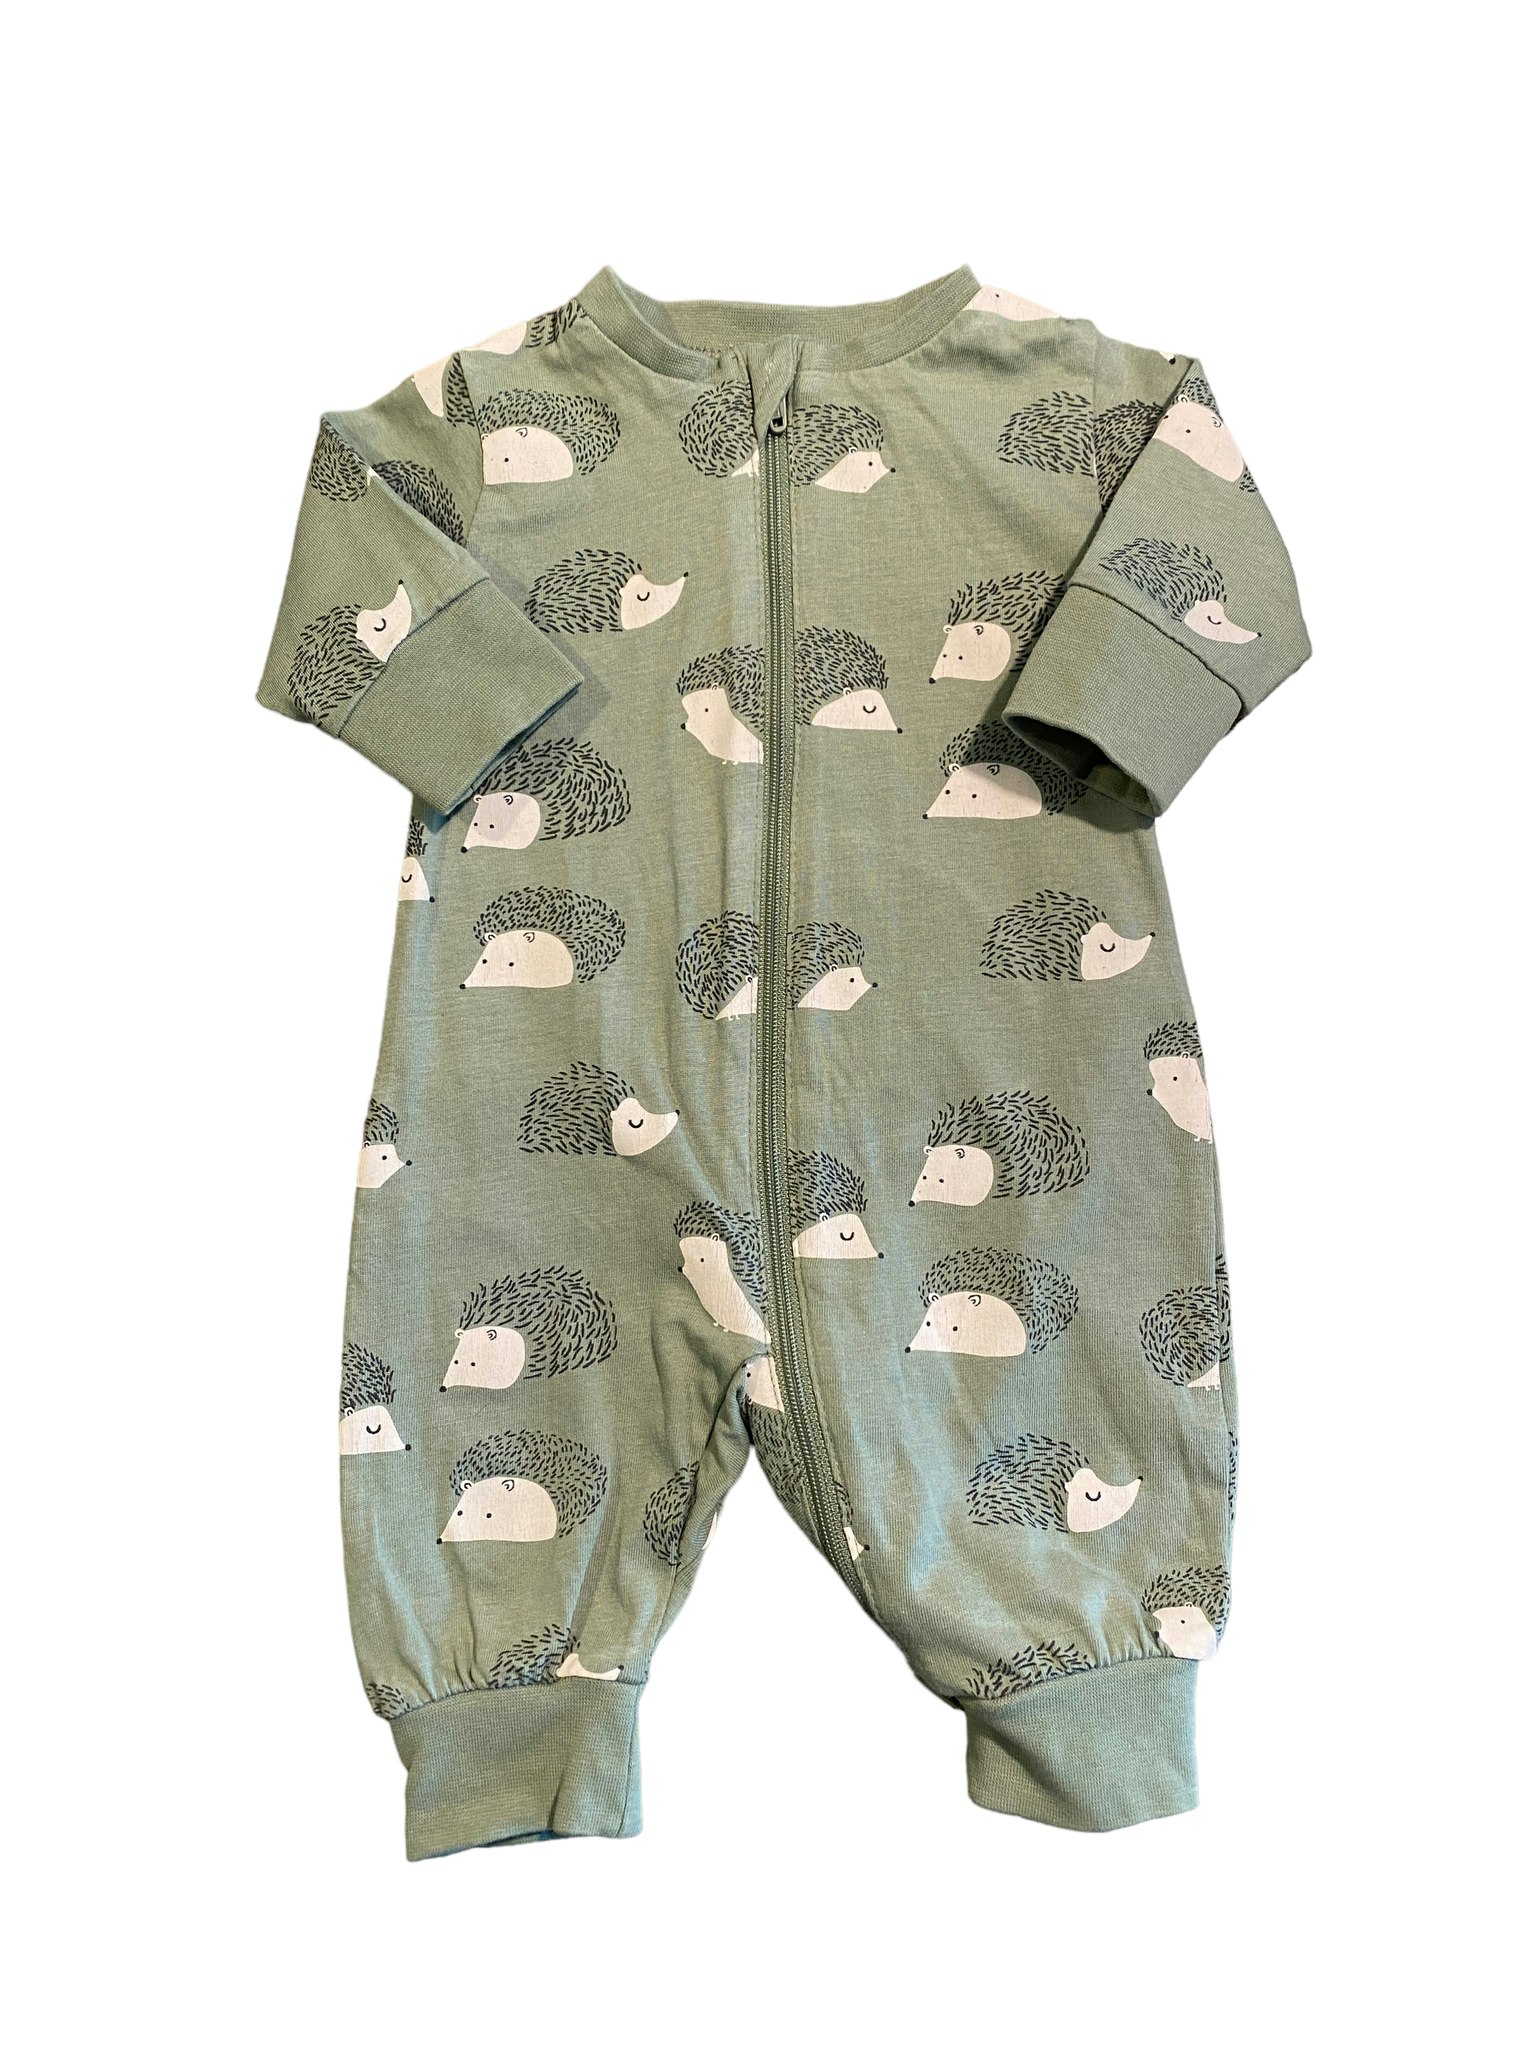 Pyjamas med igelkottar, Lindex, stl 50